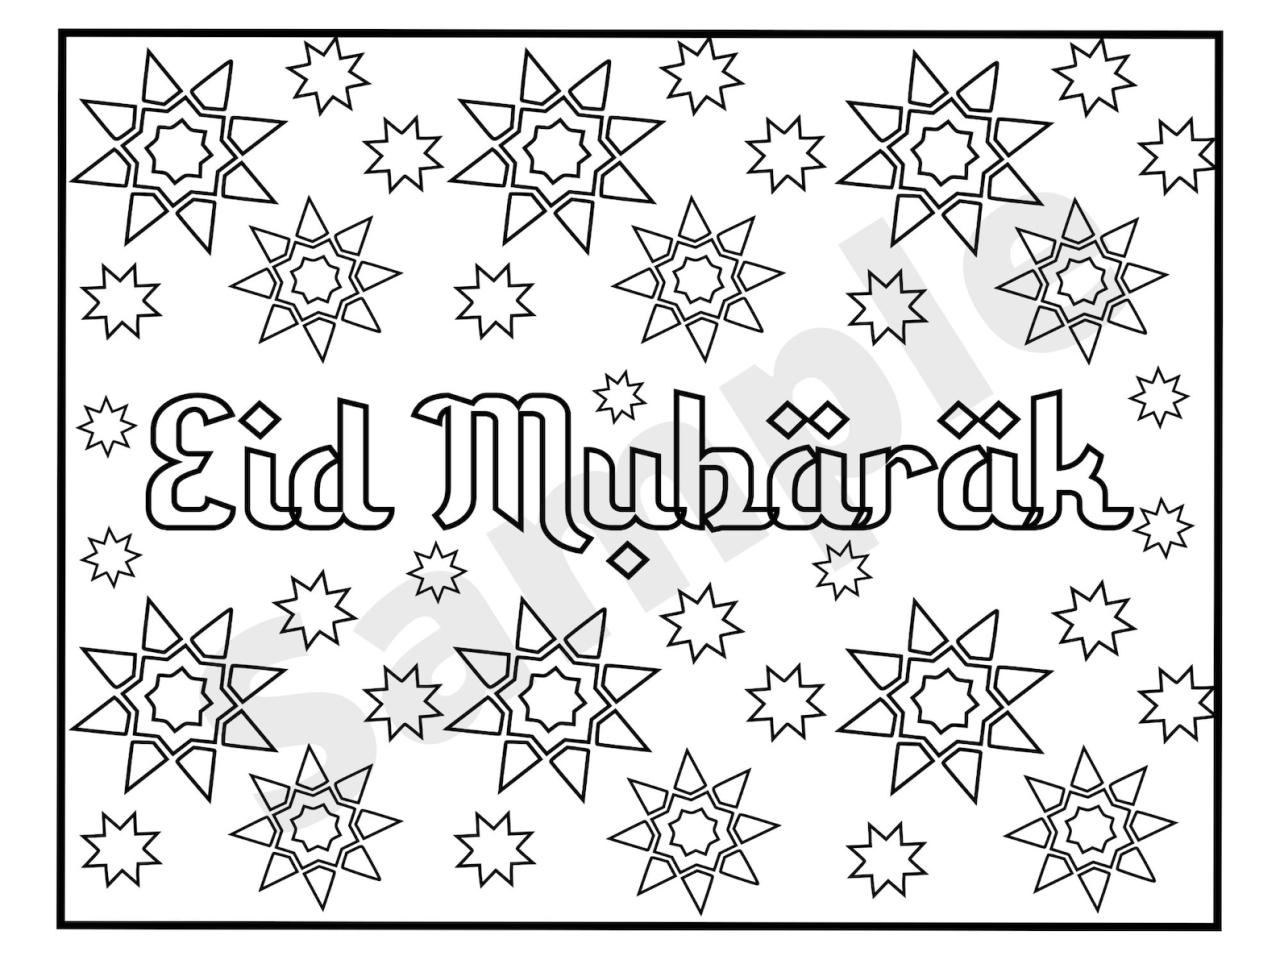 Ramadan mubarak dekorasi hiasan ramadhan fitr garland idul fitri crescent lebaran marthastewart menyambut raya adha kalender making menghias homemydesign minimalis